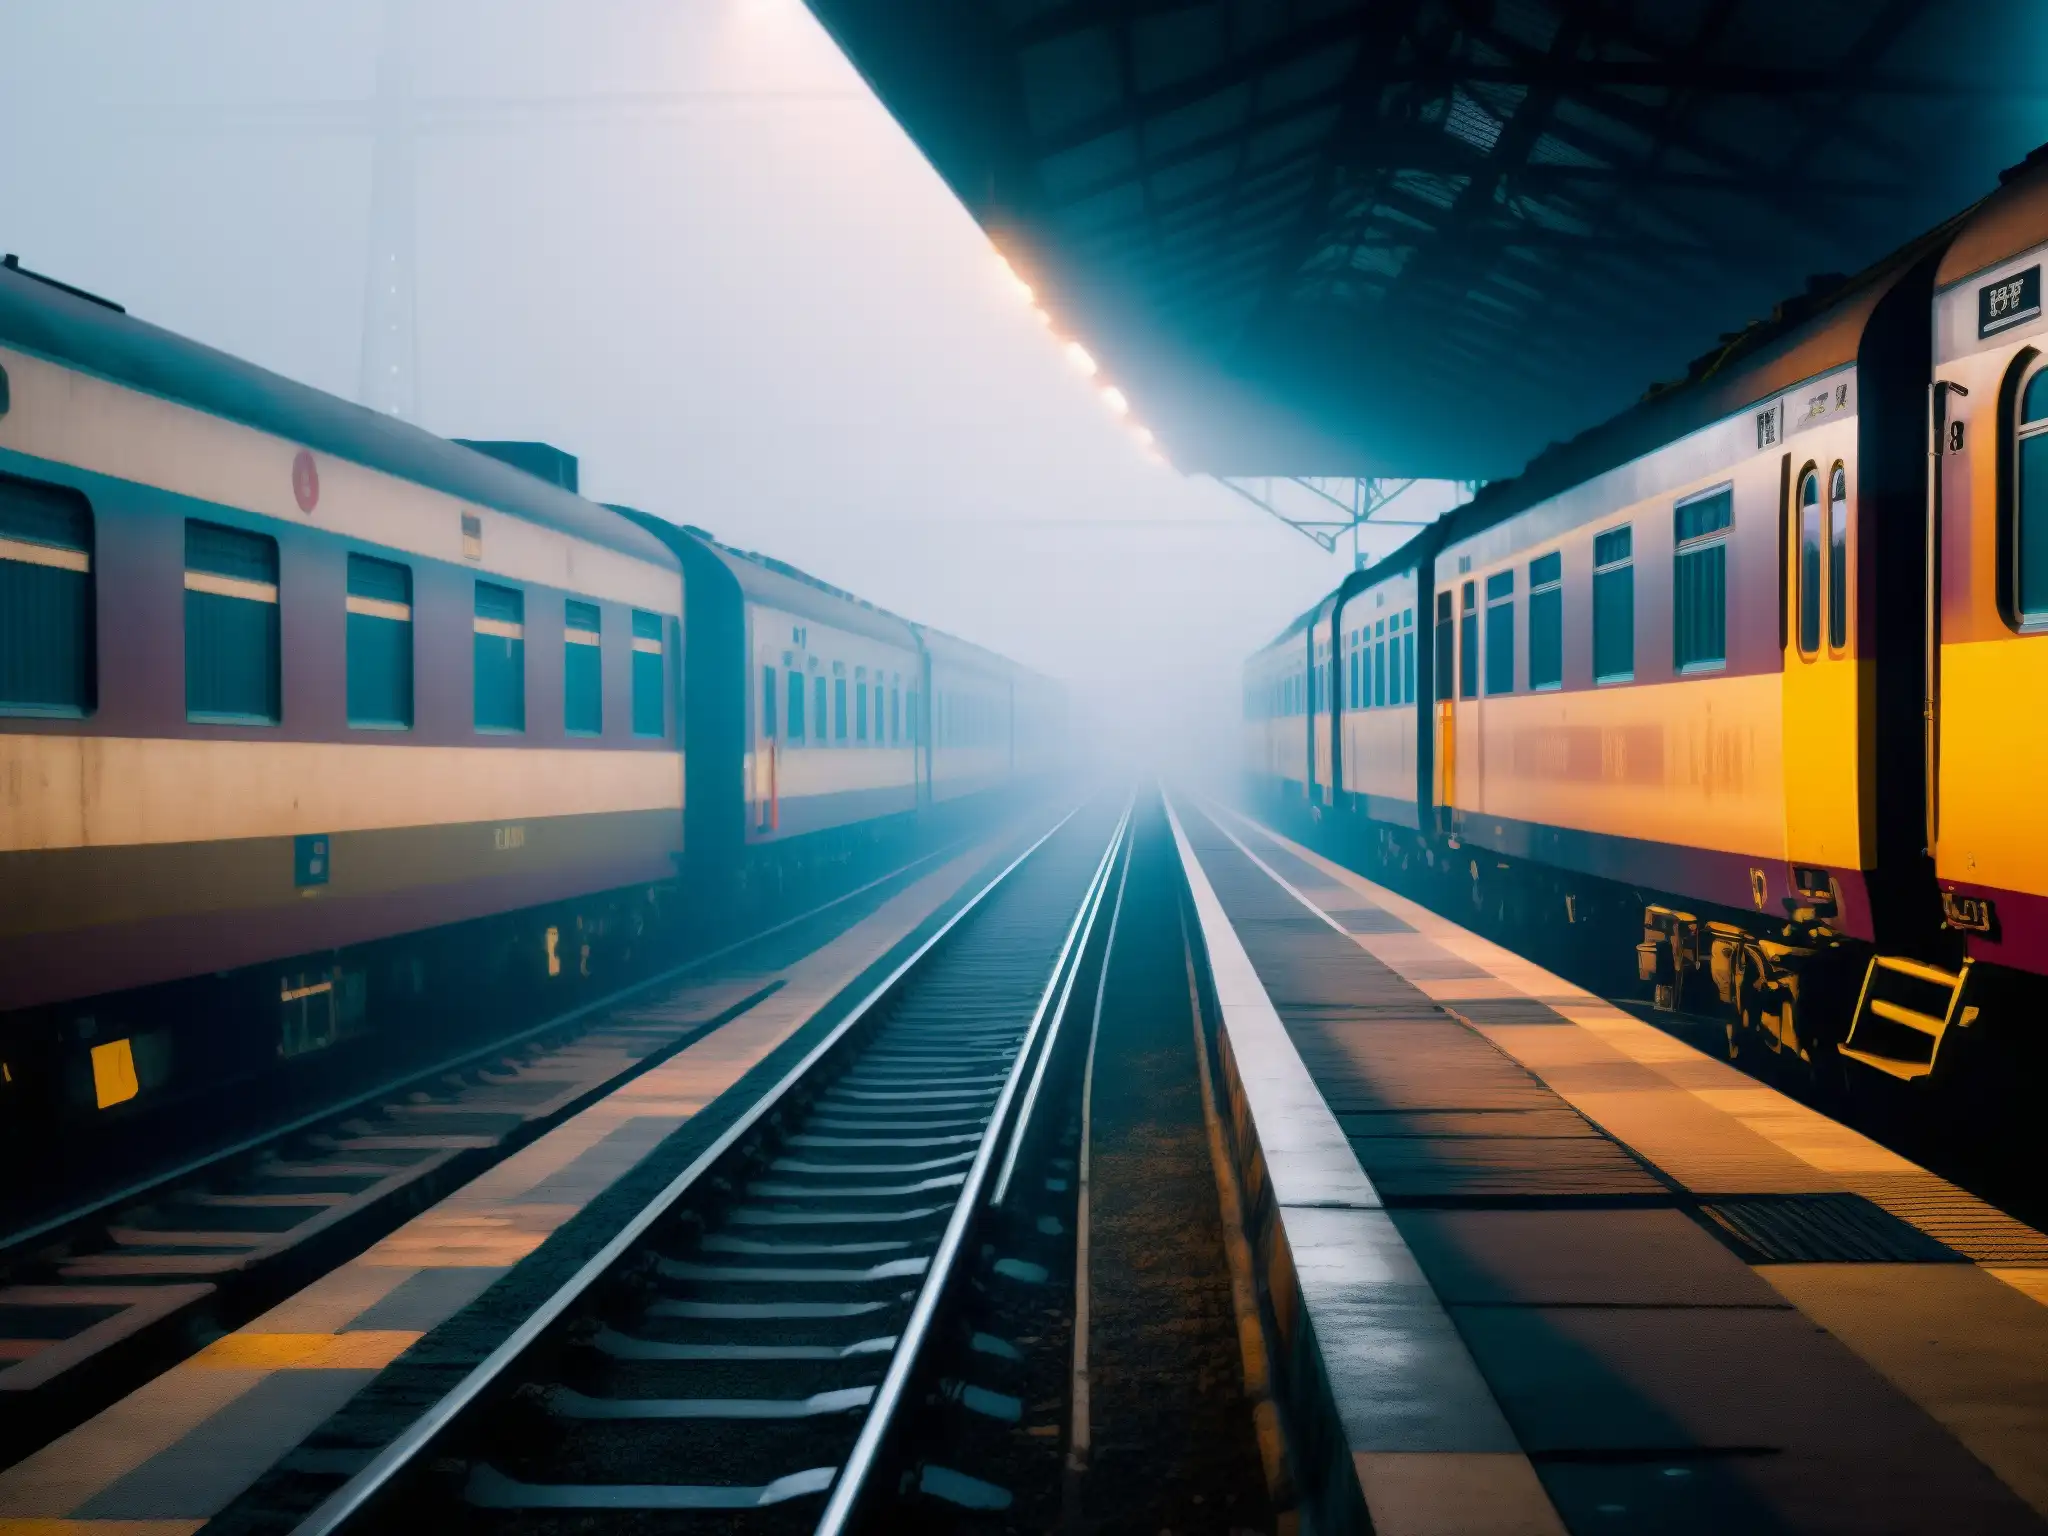 Plataformas neblinosas de la estación Howrah, con vías vacías y atmósfera misteriosa